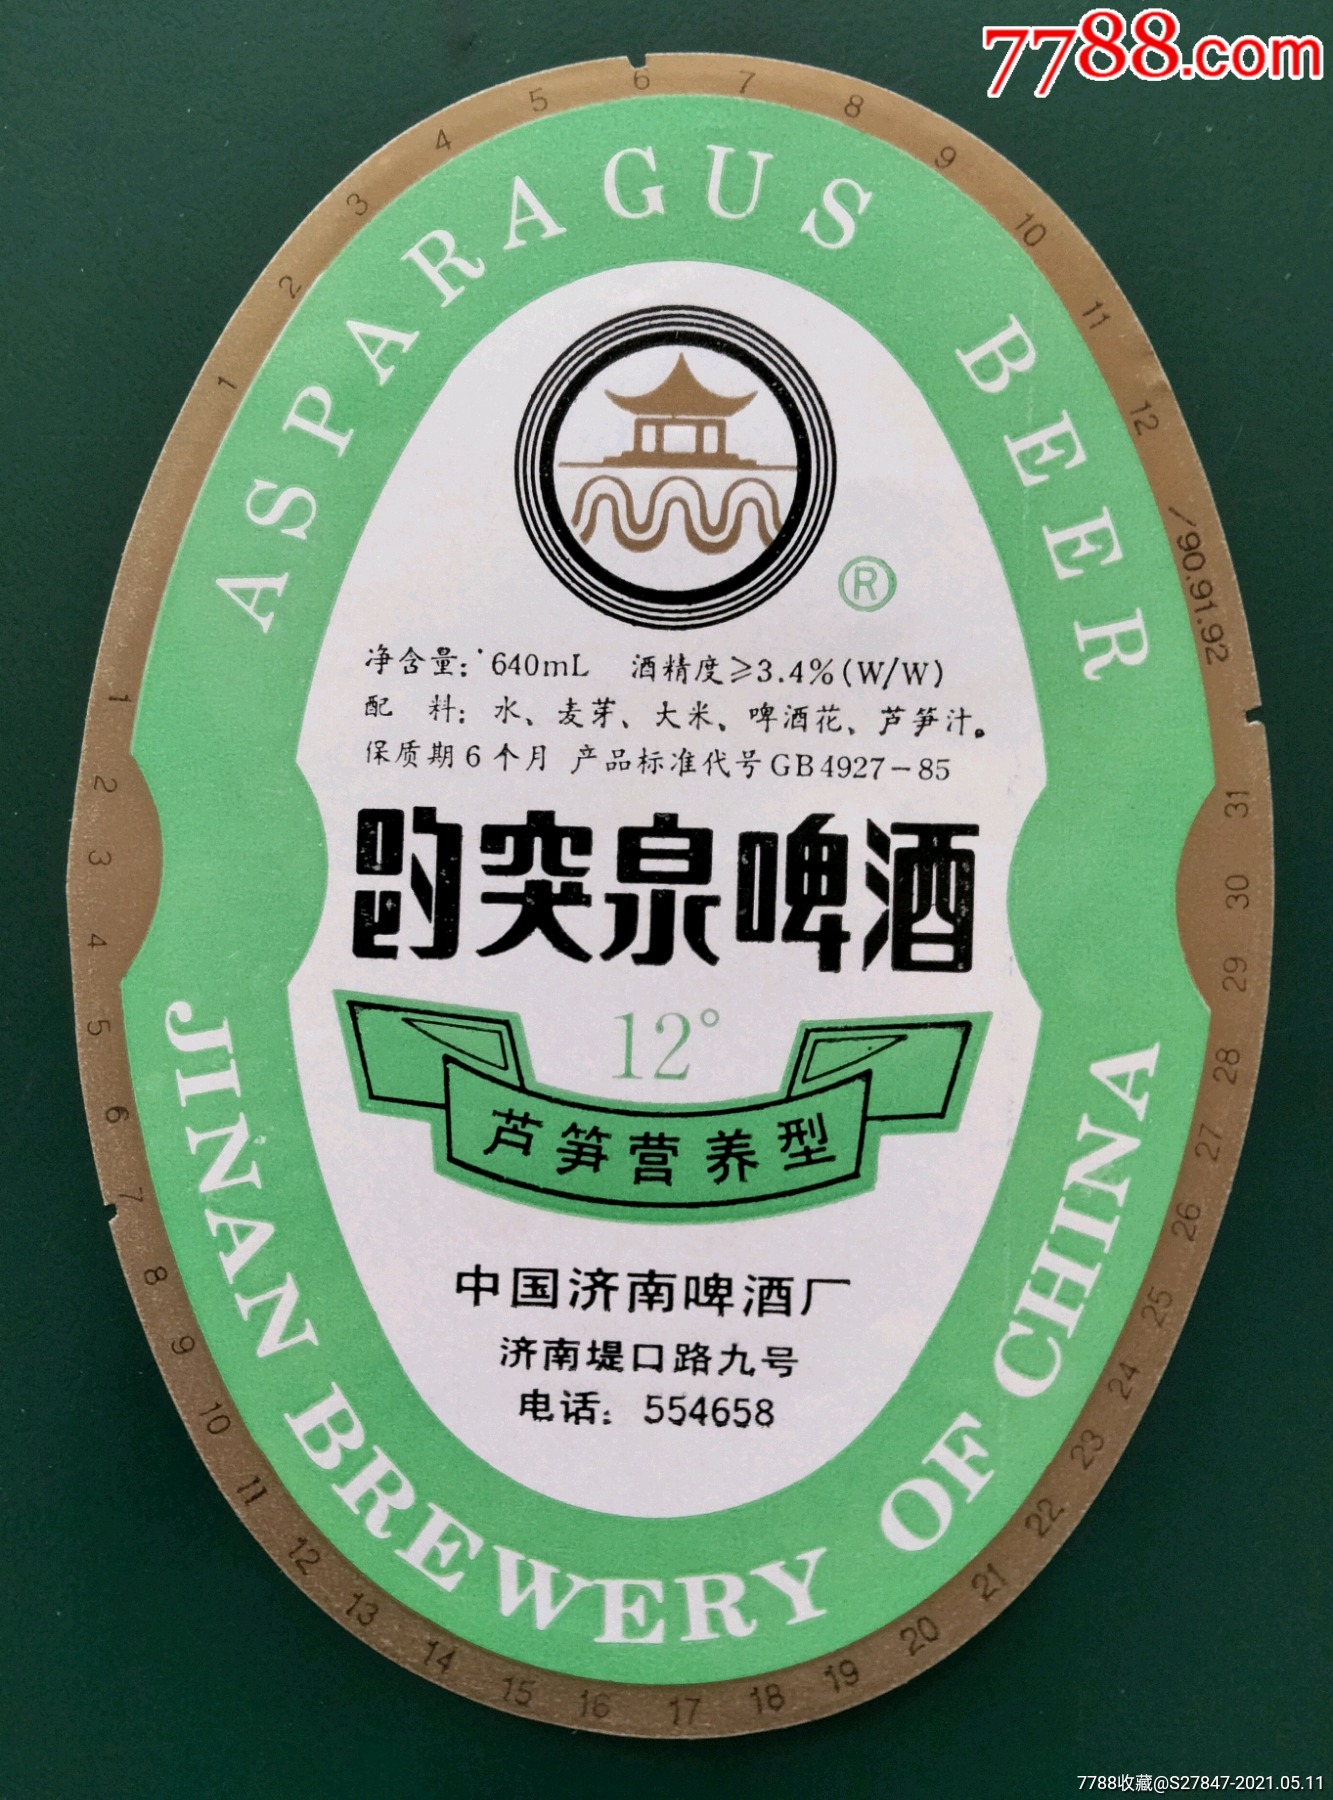 趵突泉啤酒济南图片